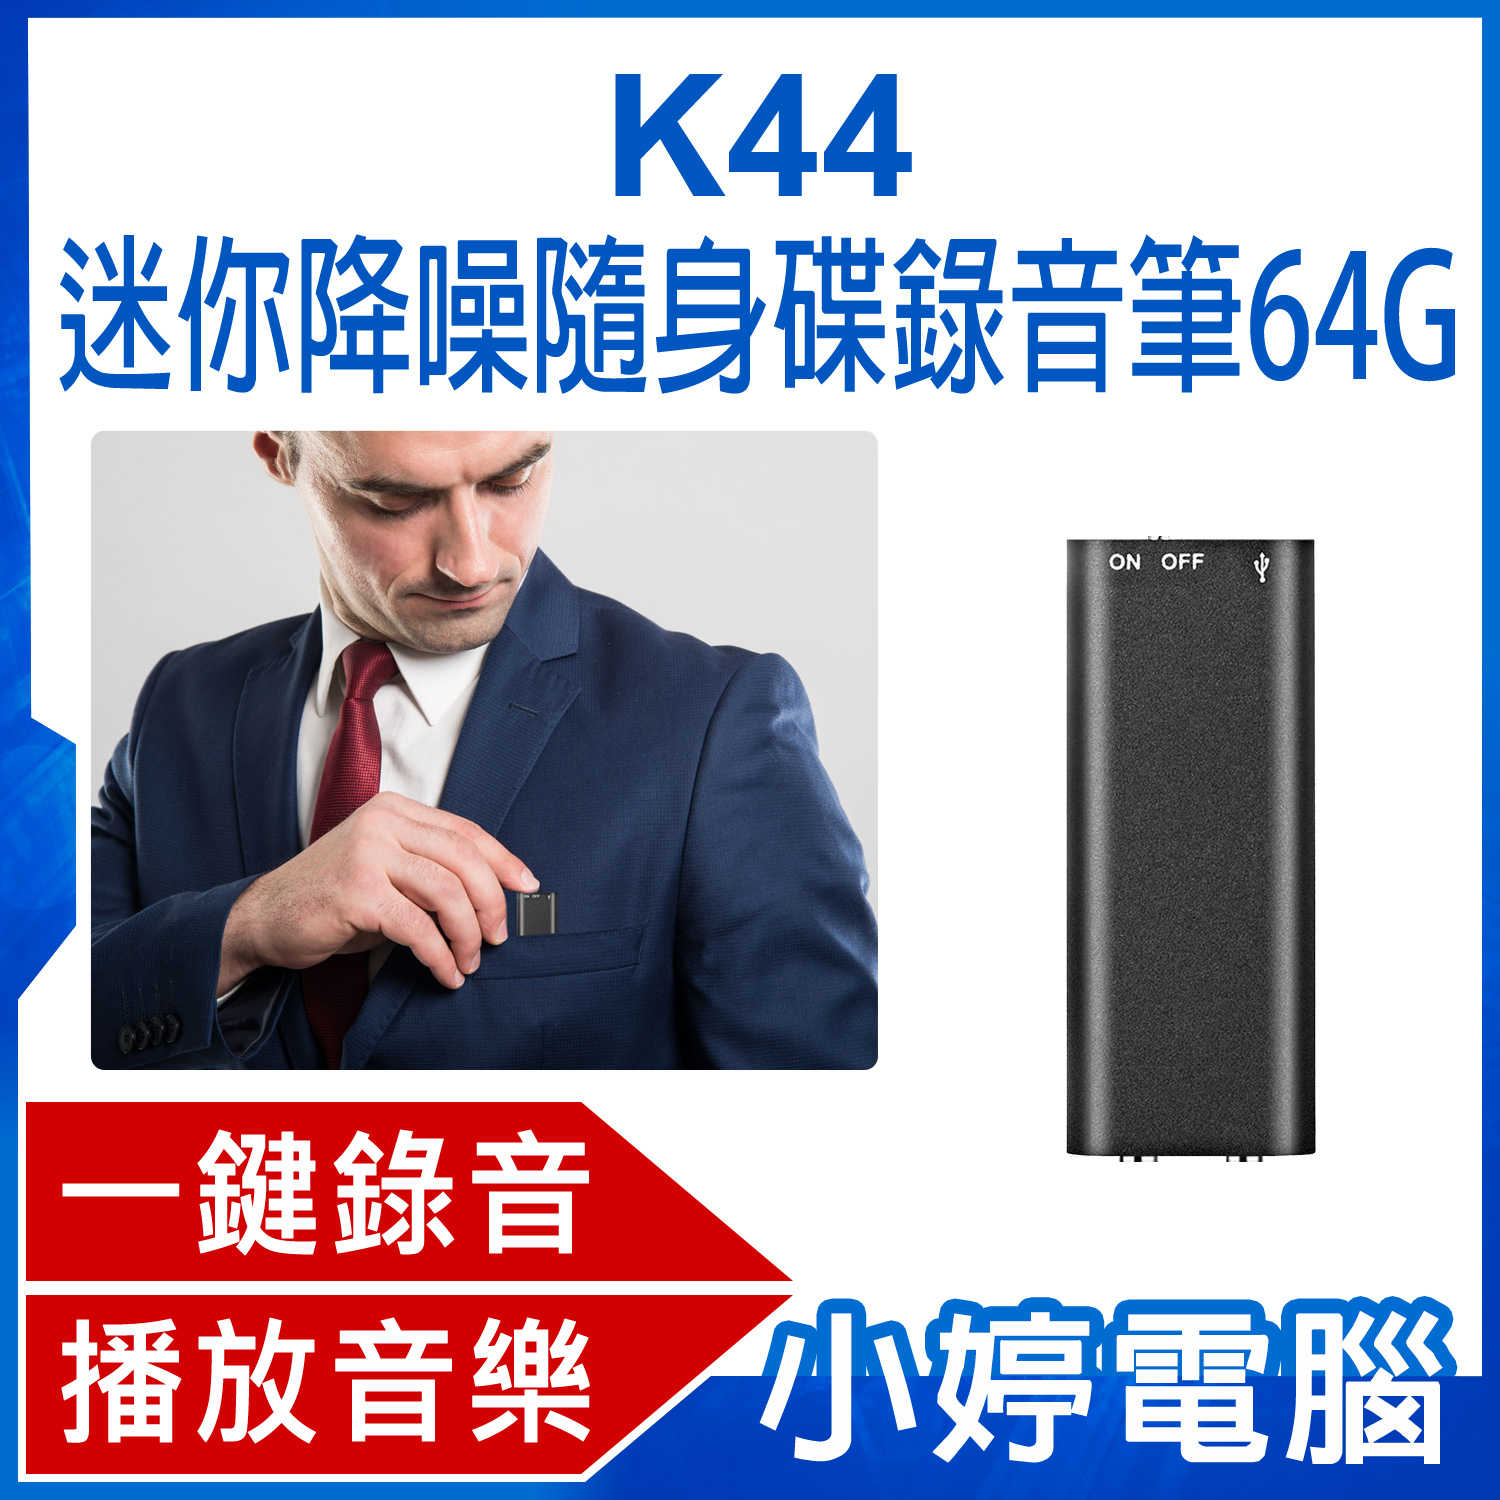 【小婷電腦】K44 迷你降噪隨身碟錄音筆 64G 高清降噪音微型錄音器 小型隨身錄音機 一鍵錄音 聲控錄音